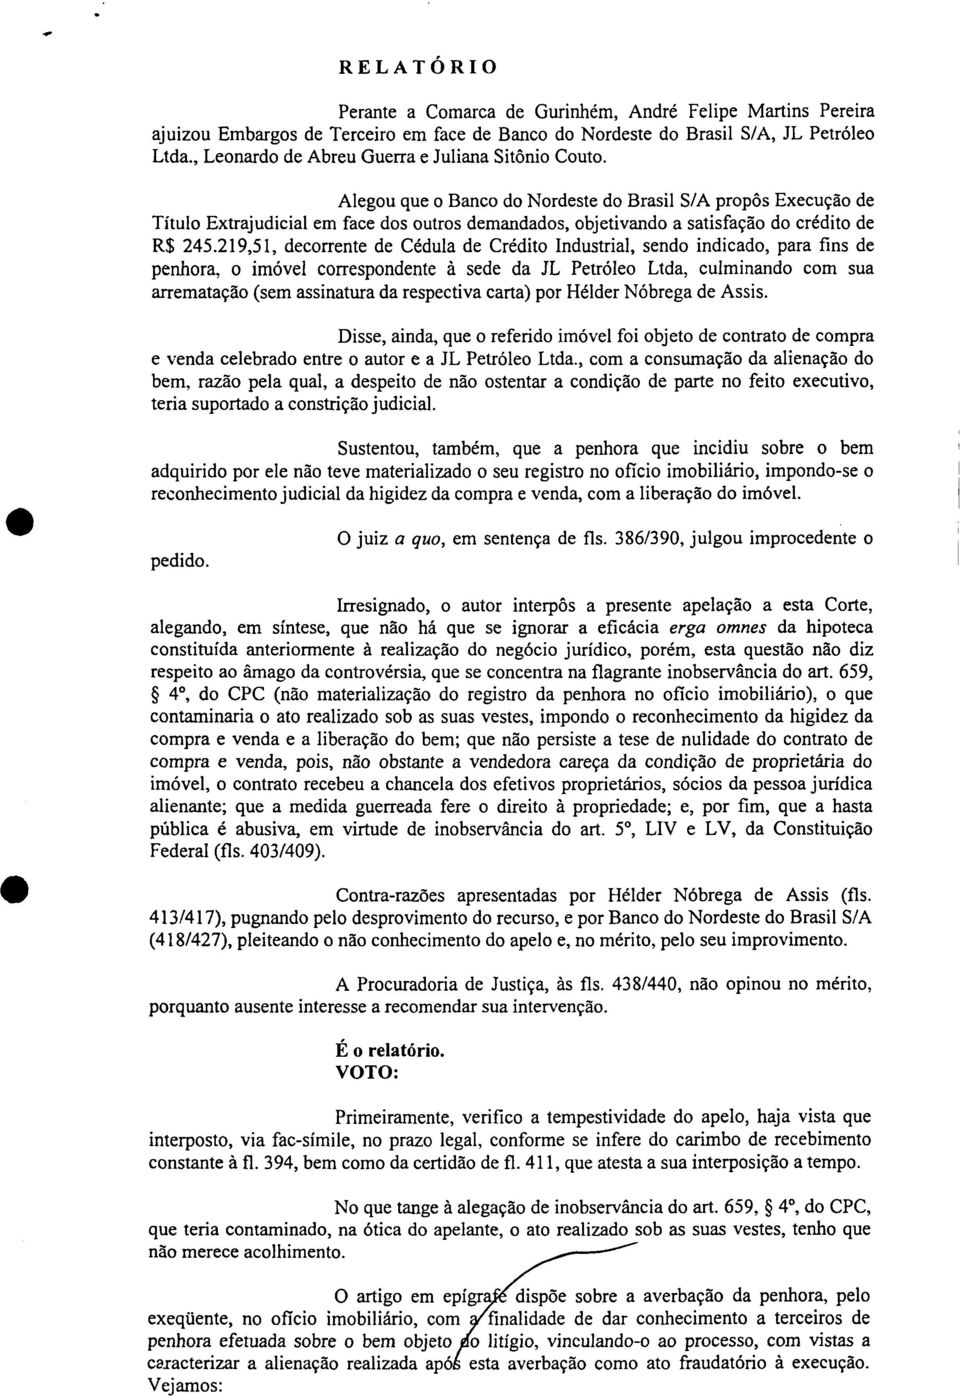 Alegou que o Banco do Nordeste do Brasil S/A propôs Execução de Título Extrajudicial em face dos outros demandados, objetivando a satisfação do crédito de R$ 245.